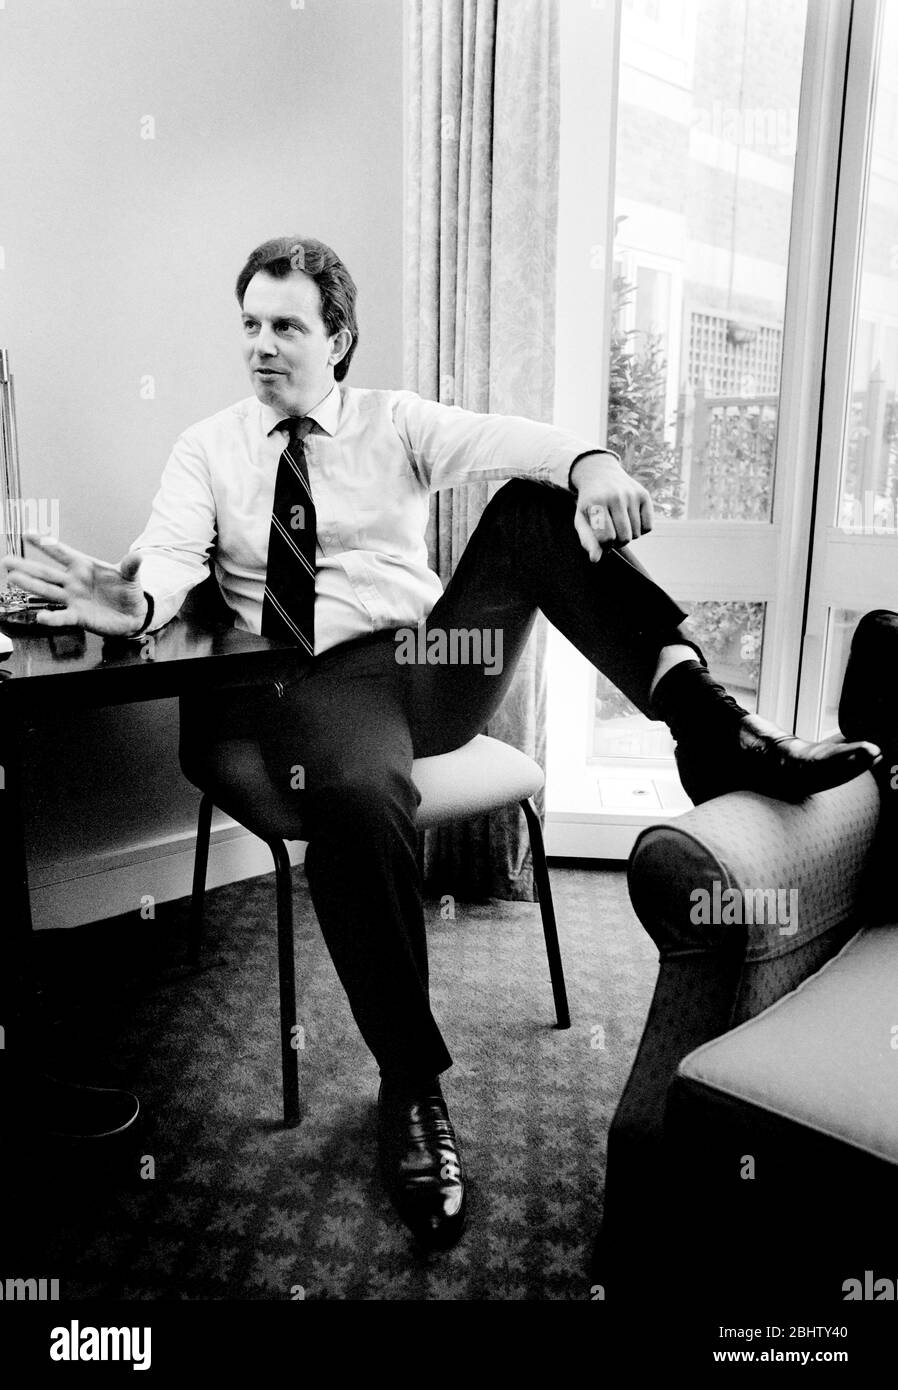 Tony Blair, fotografiado en casa a principios de los años 90, antes de convertirse en primer Ministro del Reino Unido. Foto de stock